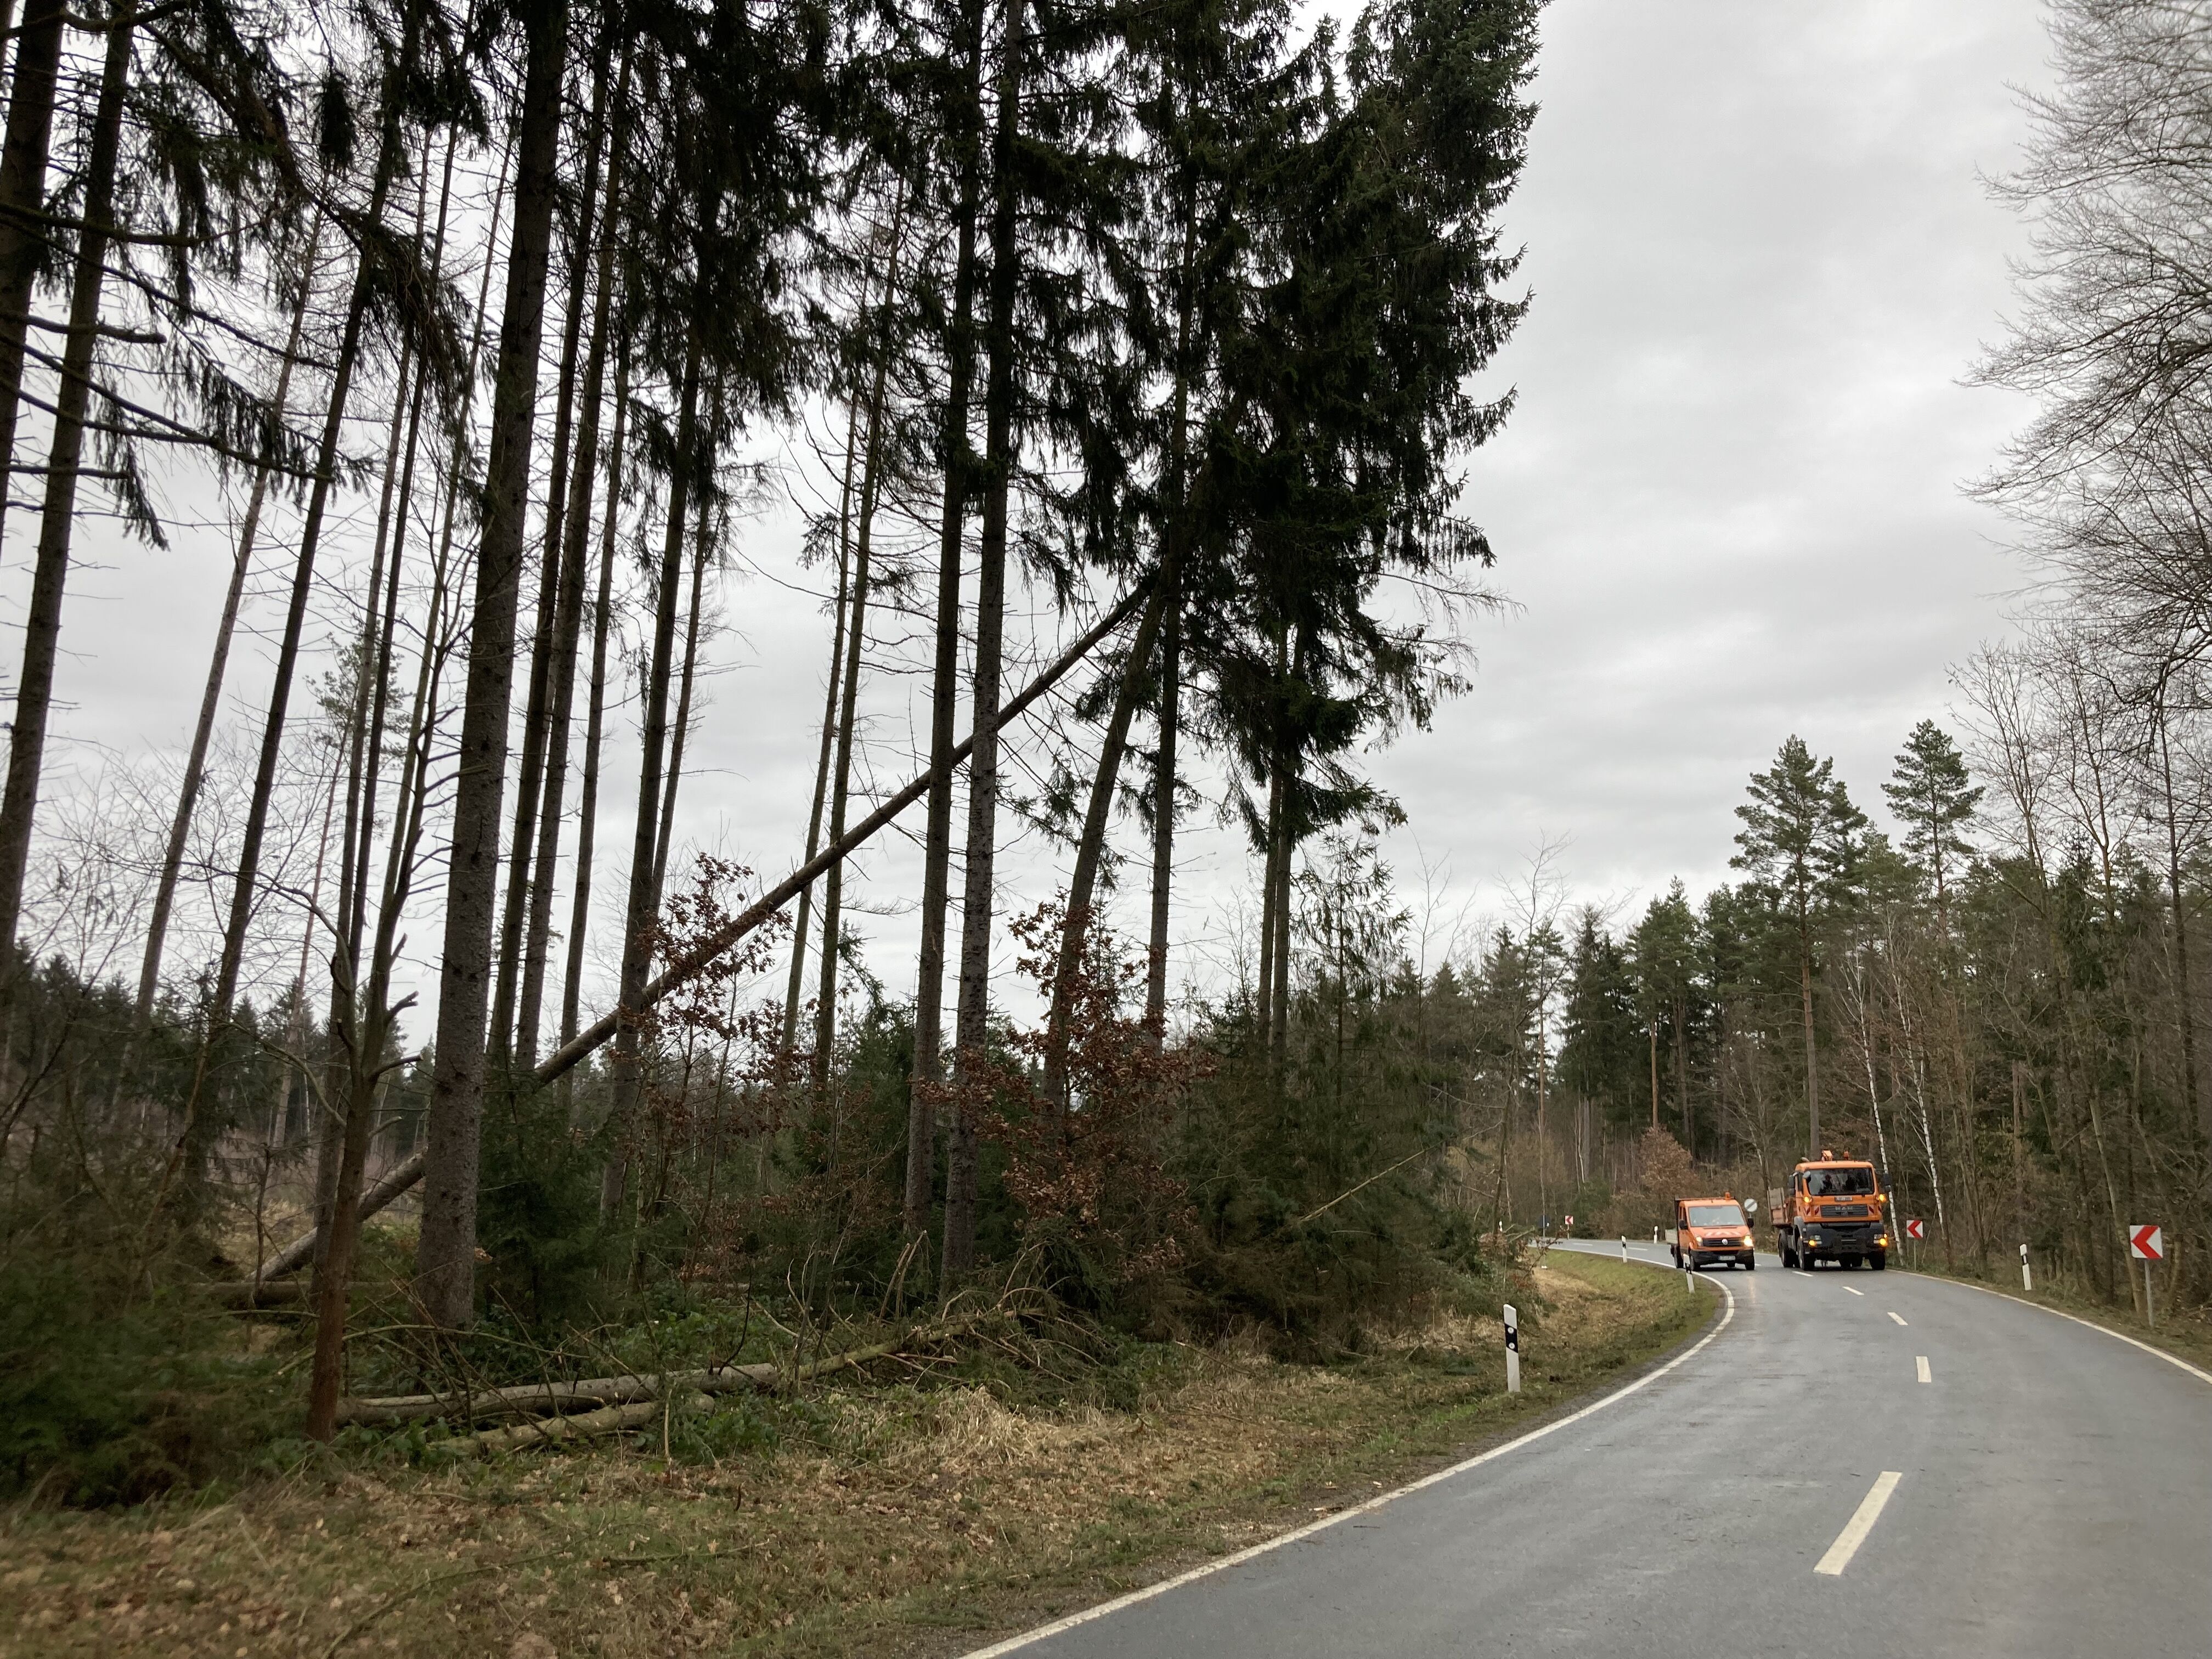 Um die sichere Beseitigung der Sturmschäden entlang der LIF23 gewährleisten zu können, wird die Kreisstraße zwischen Ebneth und Oberlangenstadt bis ei